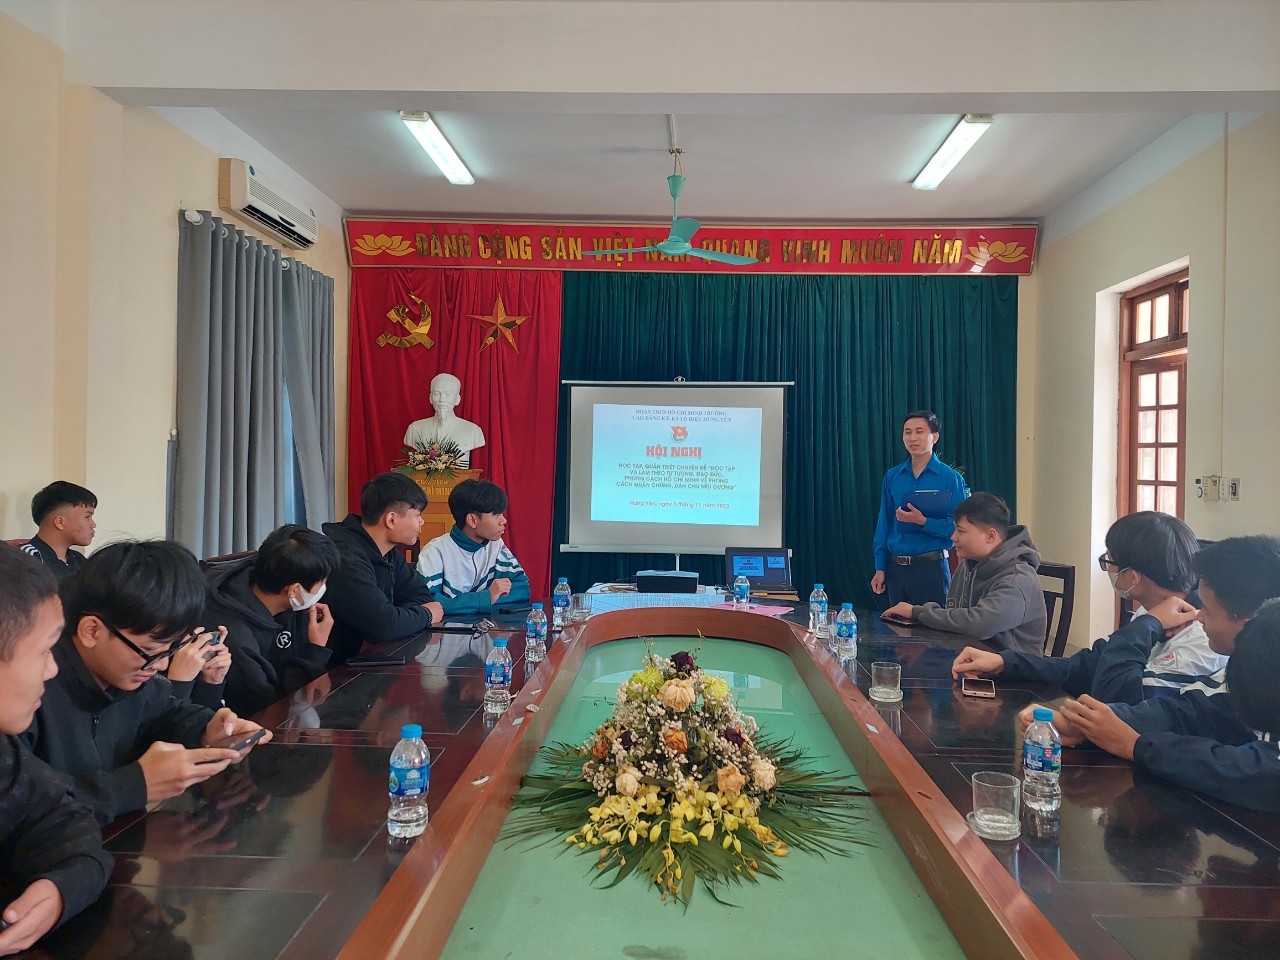 Đoàn trường cao đẳng Kinh tế- Kỹ thuật Tô Hiệu  tổ chức Hội nghị học tập chuyên đề học tập và làm theo tư tưởng, đạo đức, phong cách Hồ Chí Minh về phong cách Hồ Chí Minh dành cho cán bộ đoàn năm 2023.